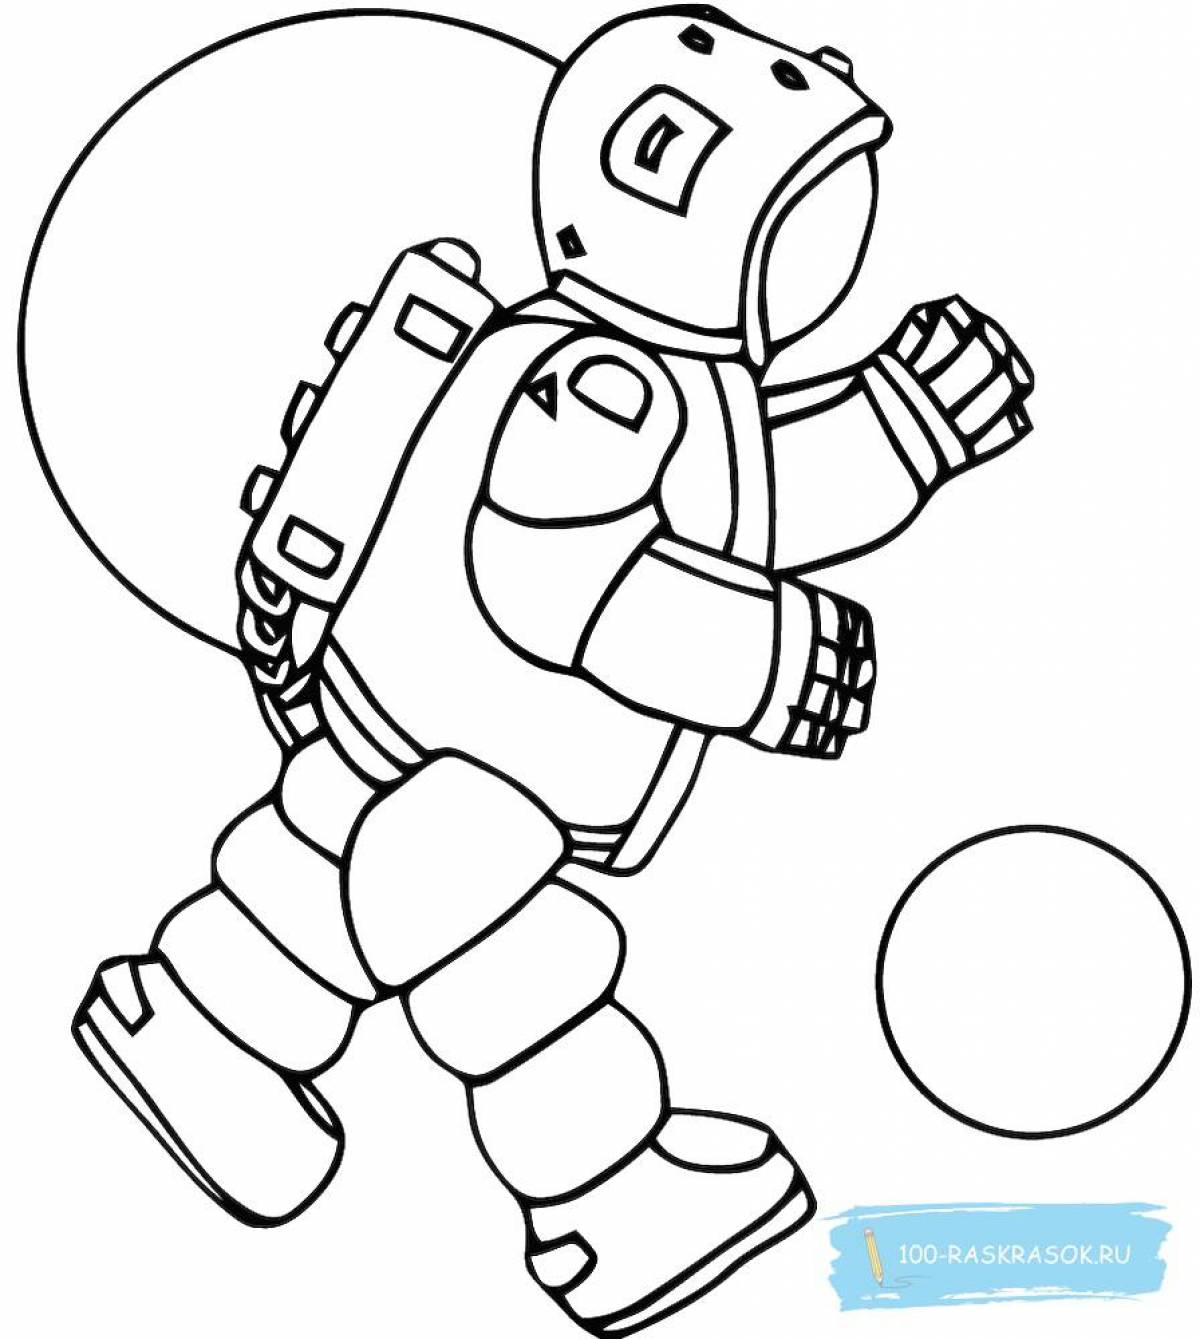 Живая страница раскраски космонавта